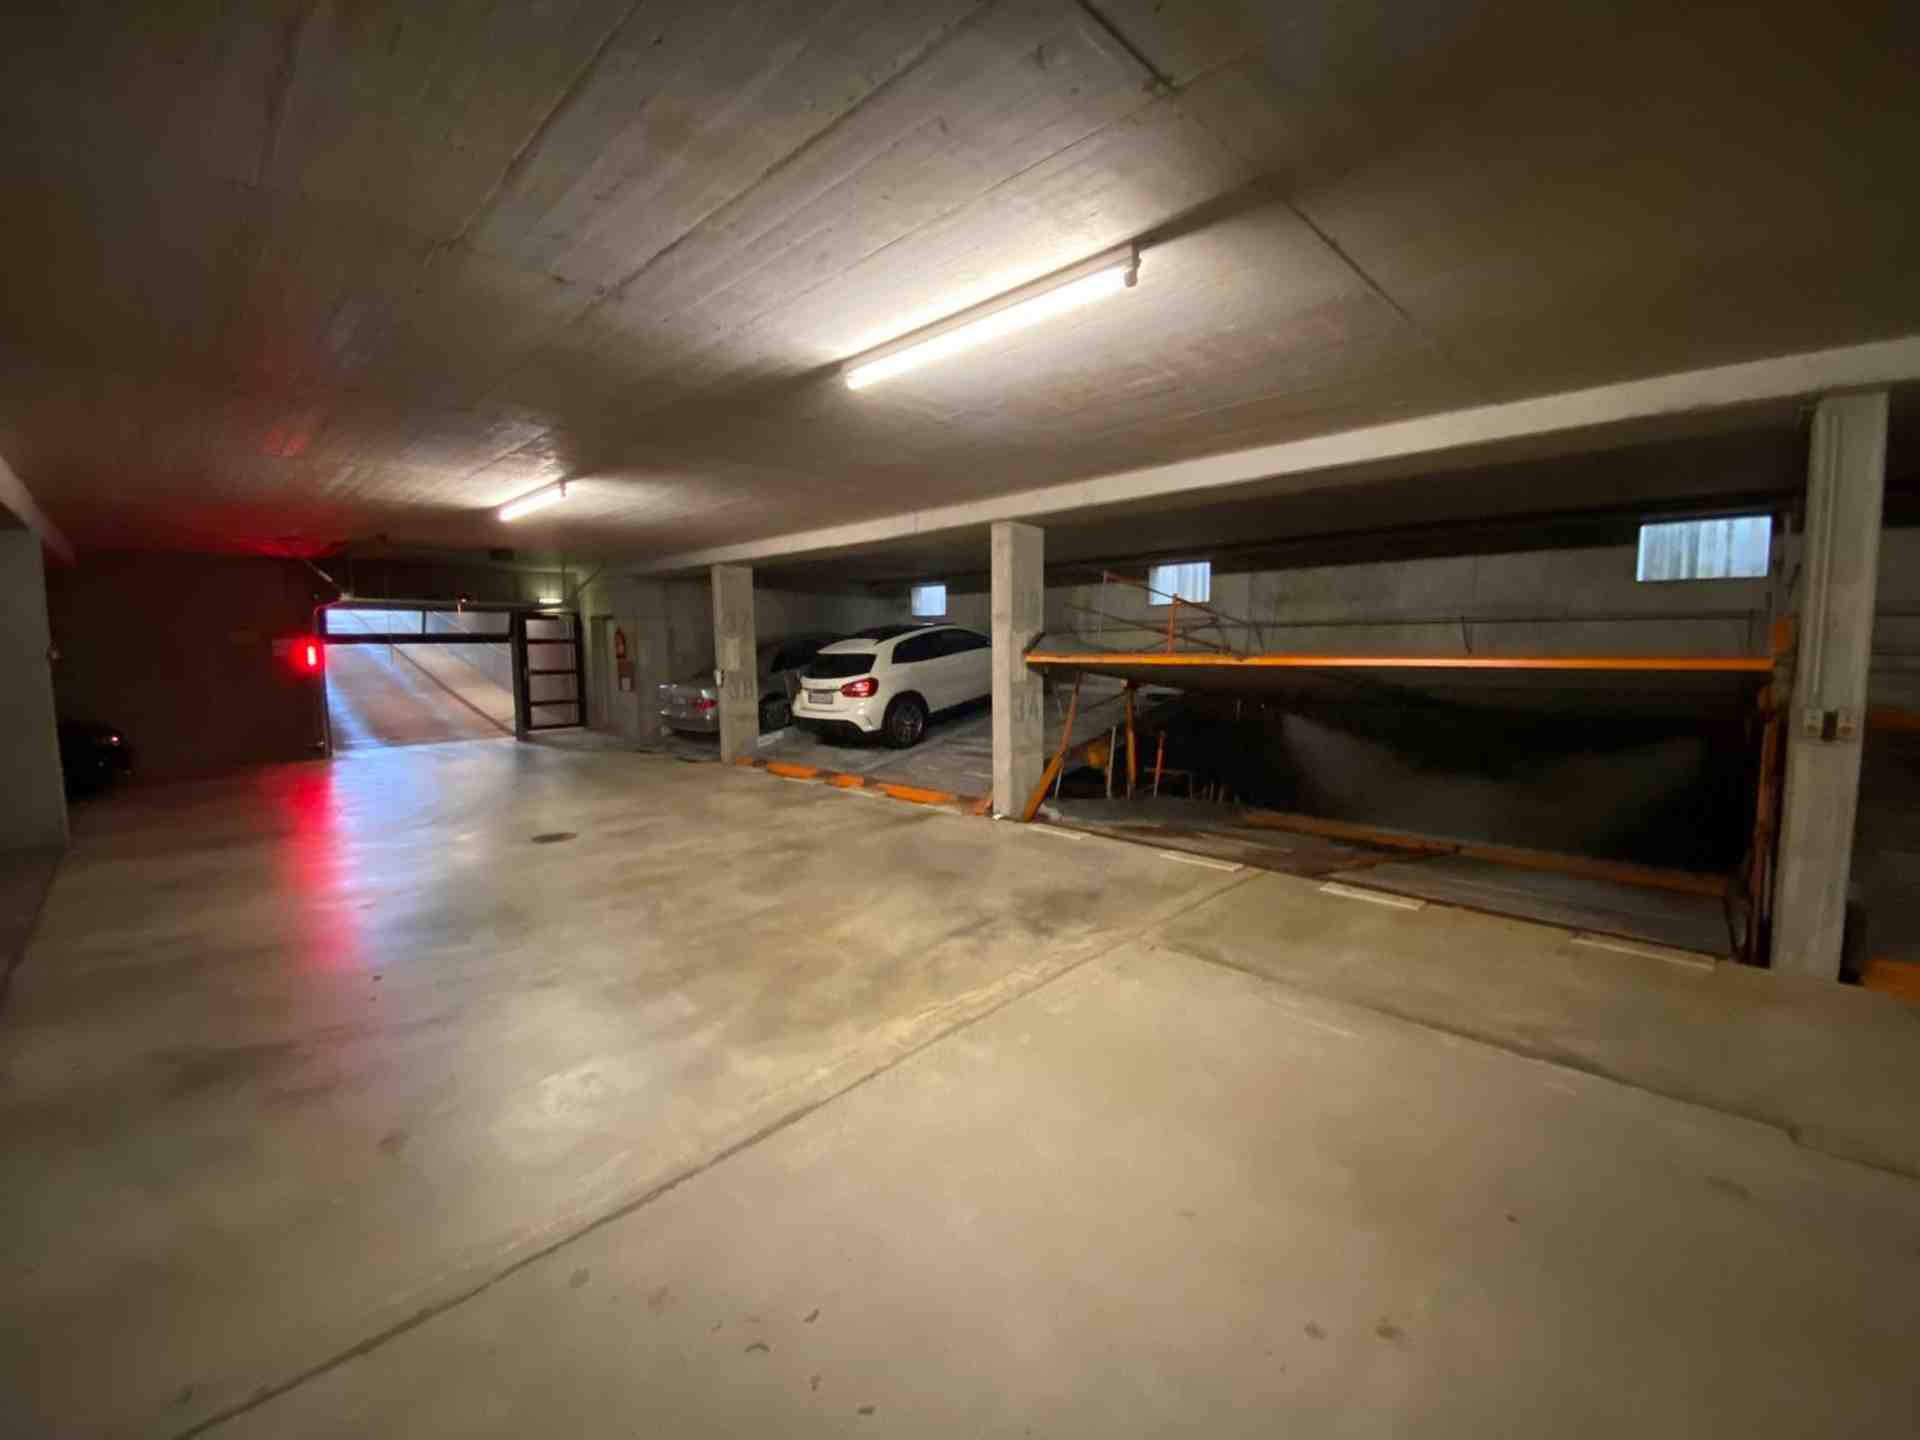 Garage / Stellplatz in München - Solln - Schuchstraße, 81477 Mníchov - Fotka 2 z 6